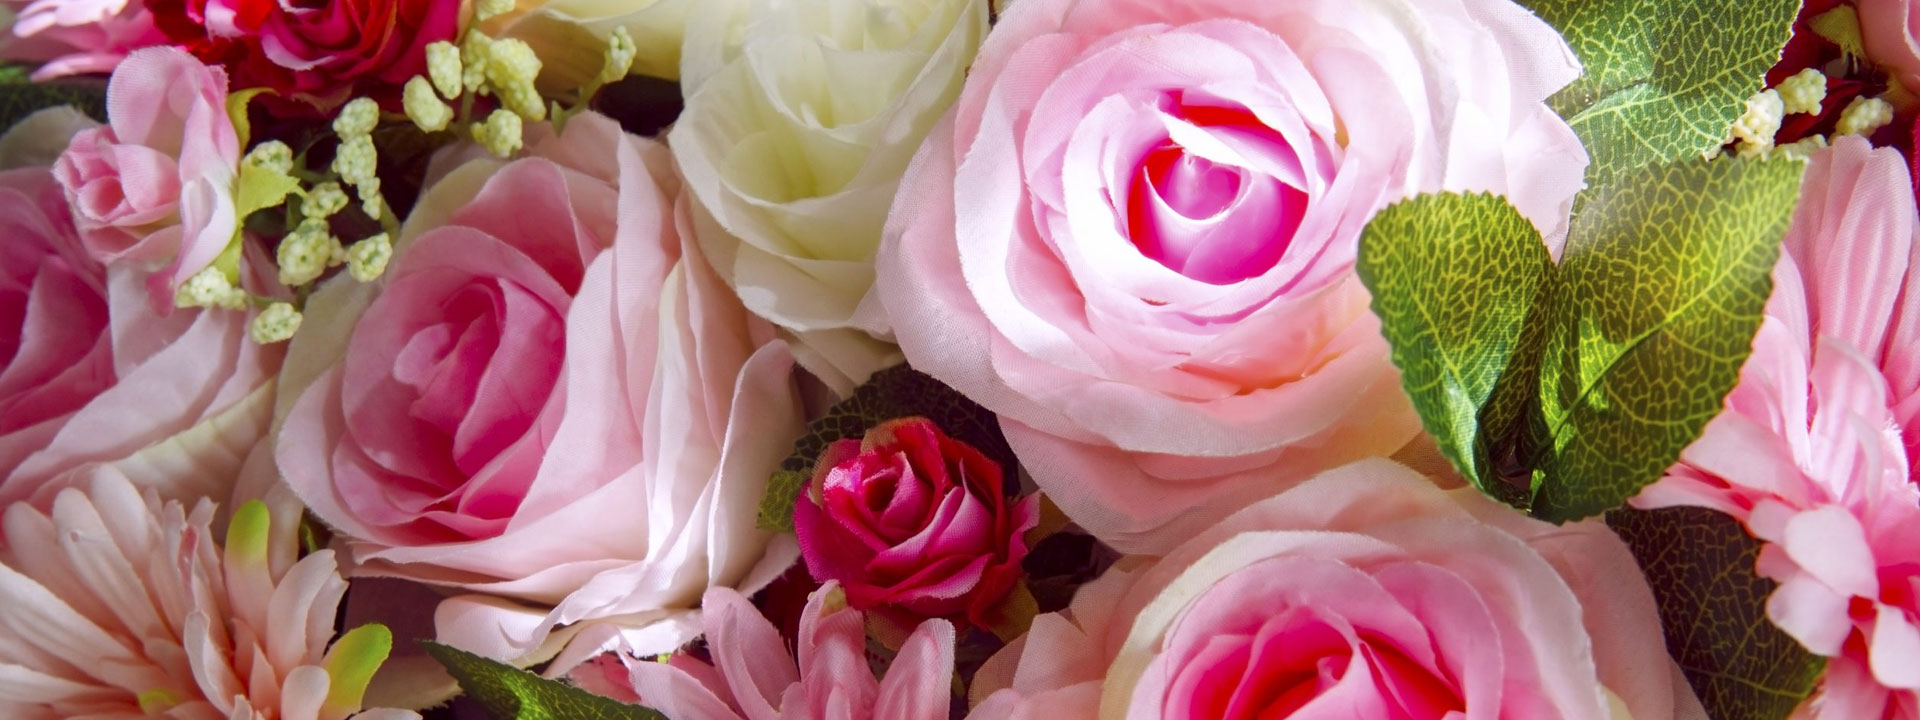 El arte de preservar flores: Conocimientos y habilidades especializadas